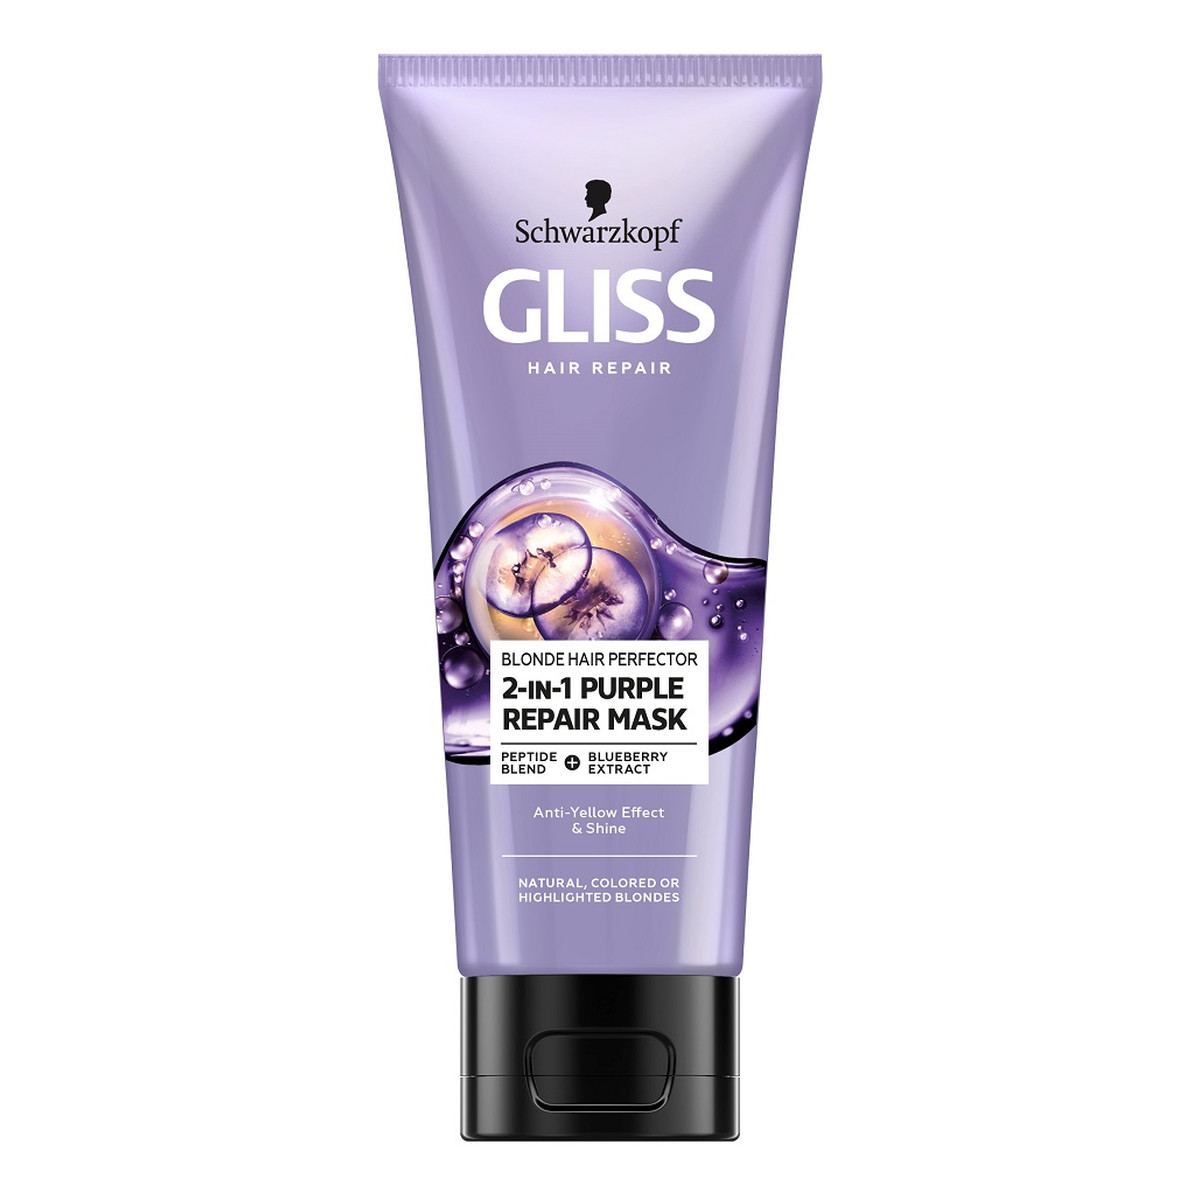 Gliss Blonde Hair Perfector 2-in-1 Purple Repair Mask Maska do naturalnych farbowanych lub rozjaśnianych blond włosów 200ml